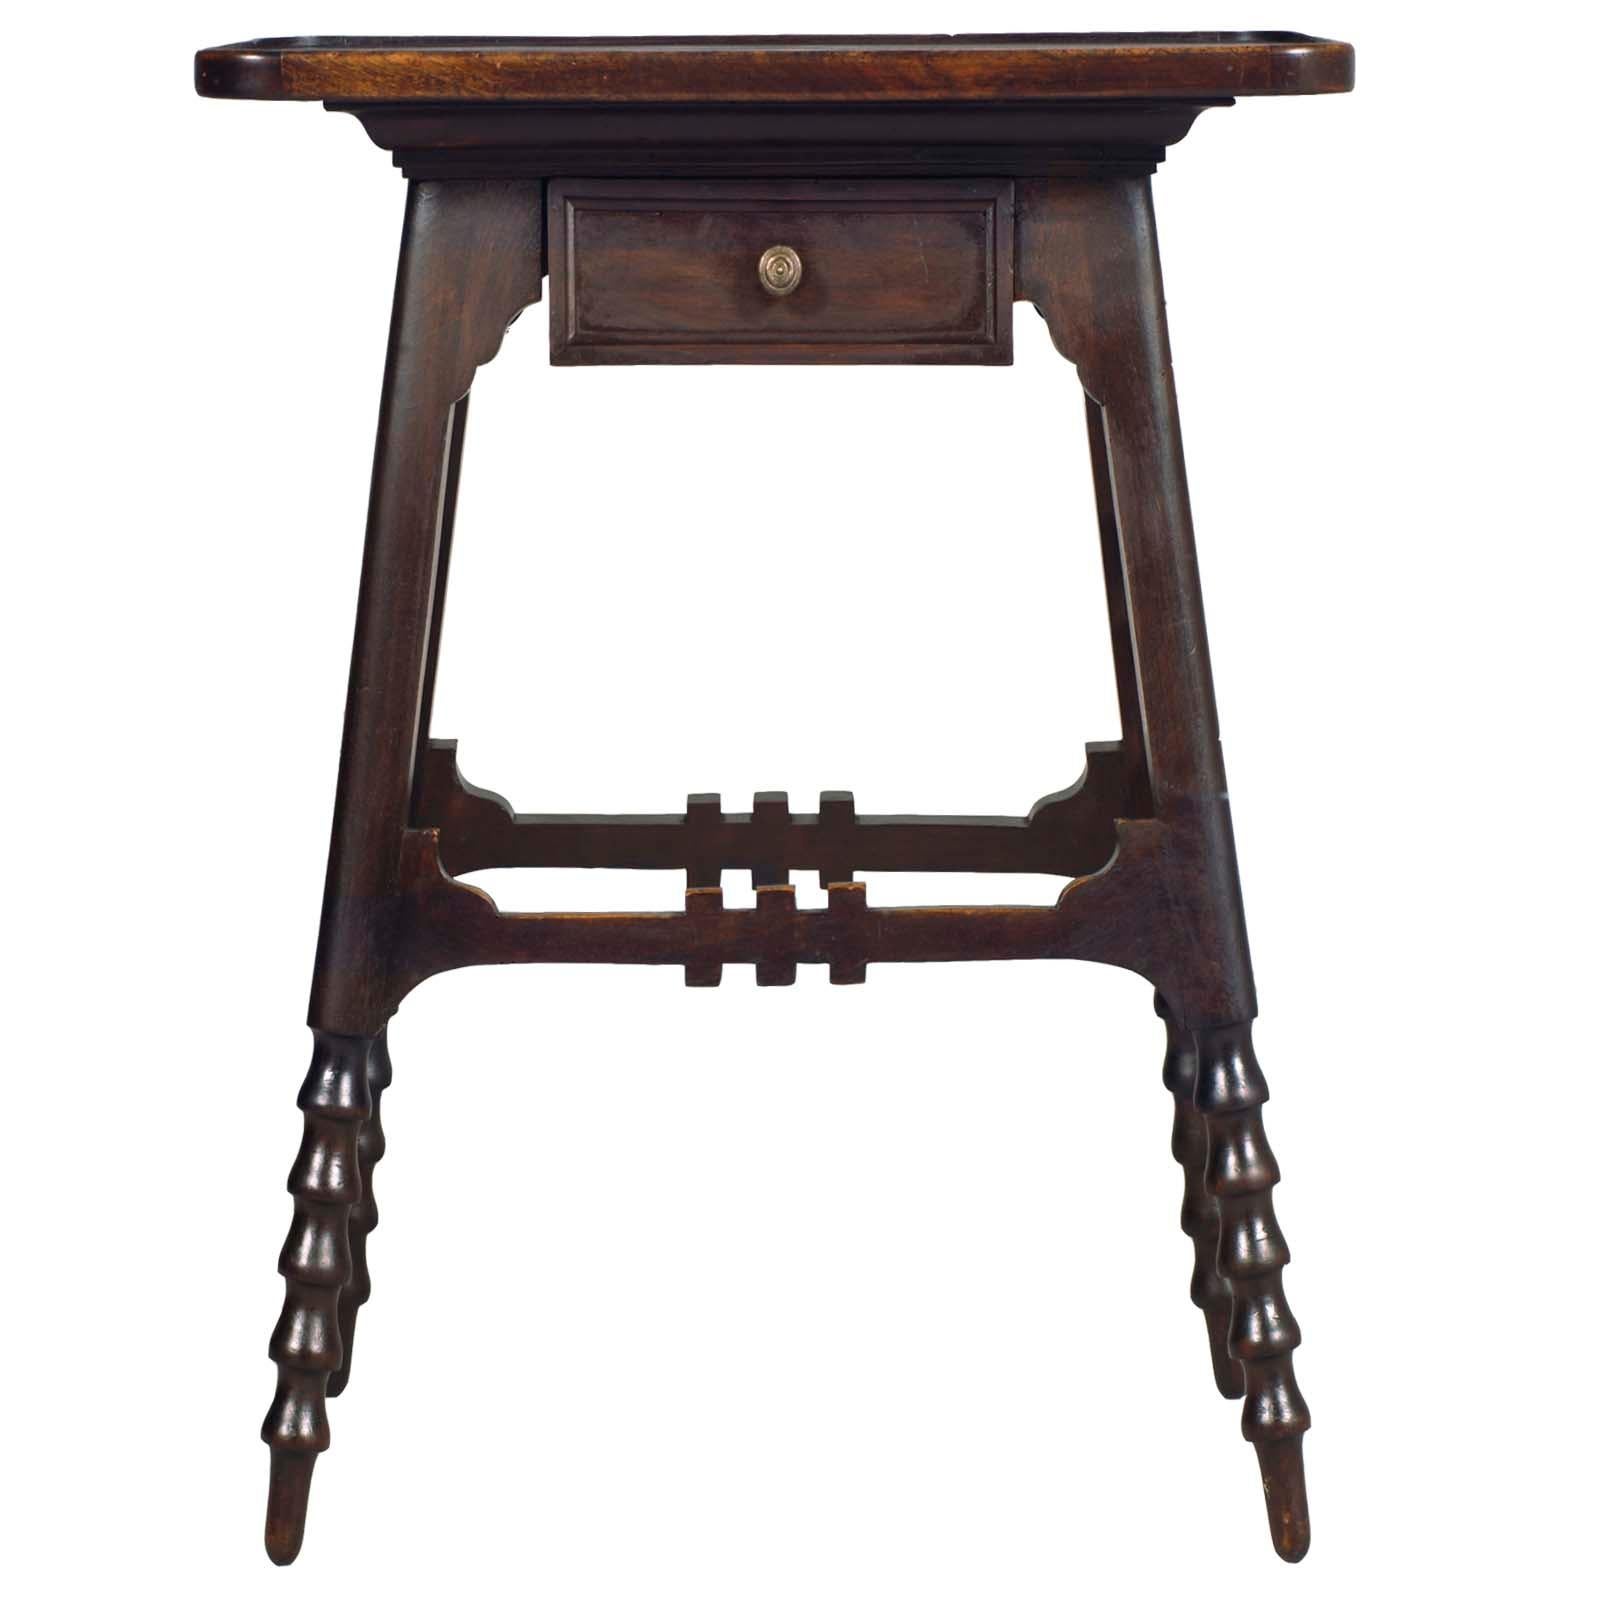 Seltene Konsole oder Nachttisch mit Schublade in Nussbaumholz von Jacob & Josef Kohn Wien entworfen zugeschrieben Wiener Werkstätte und produziert, ca. Ende des 19.